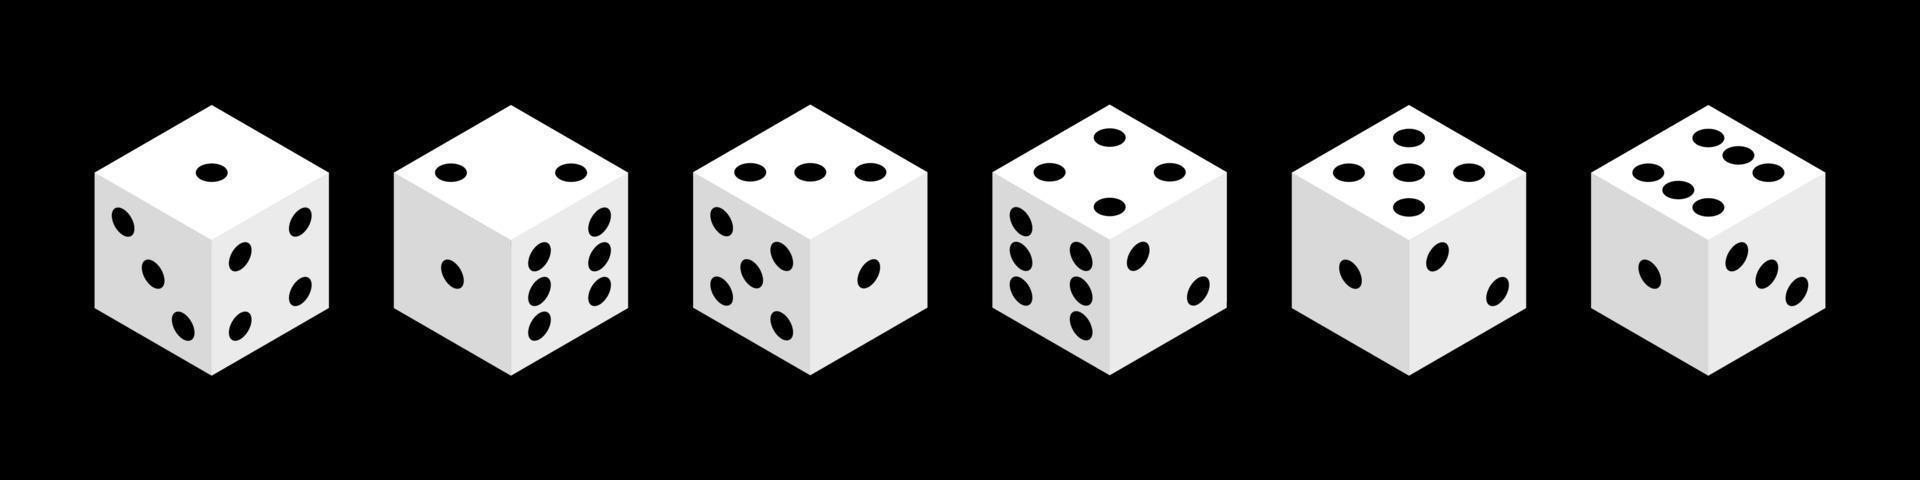 würfel isolierte isometrische vektorobjekte. realistische weiße Würfel mit einer zufälligen Anzahl von schwarzen Punkten oder Pips. Konzept für Glücksspieldesign, Casino, Craps und Poker, Tisch- oder Brettspiele. vektor